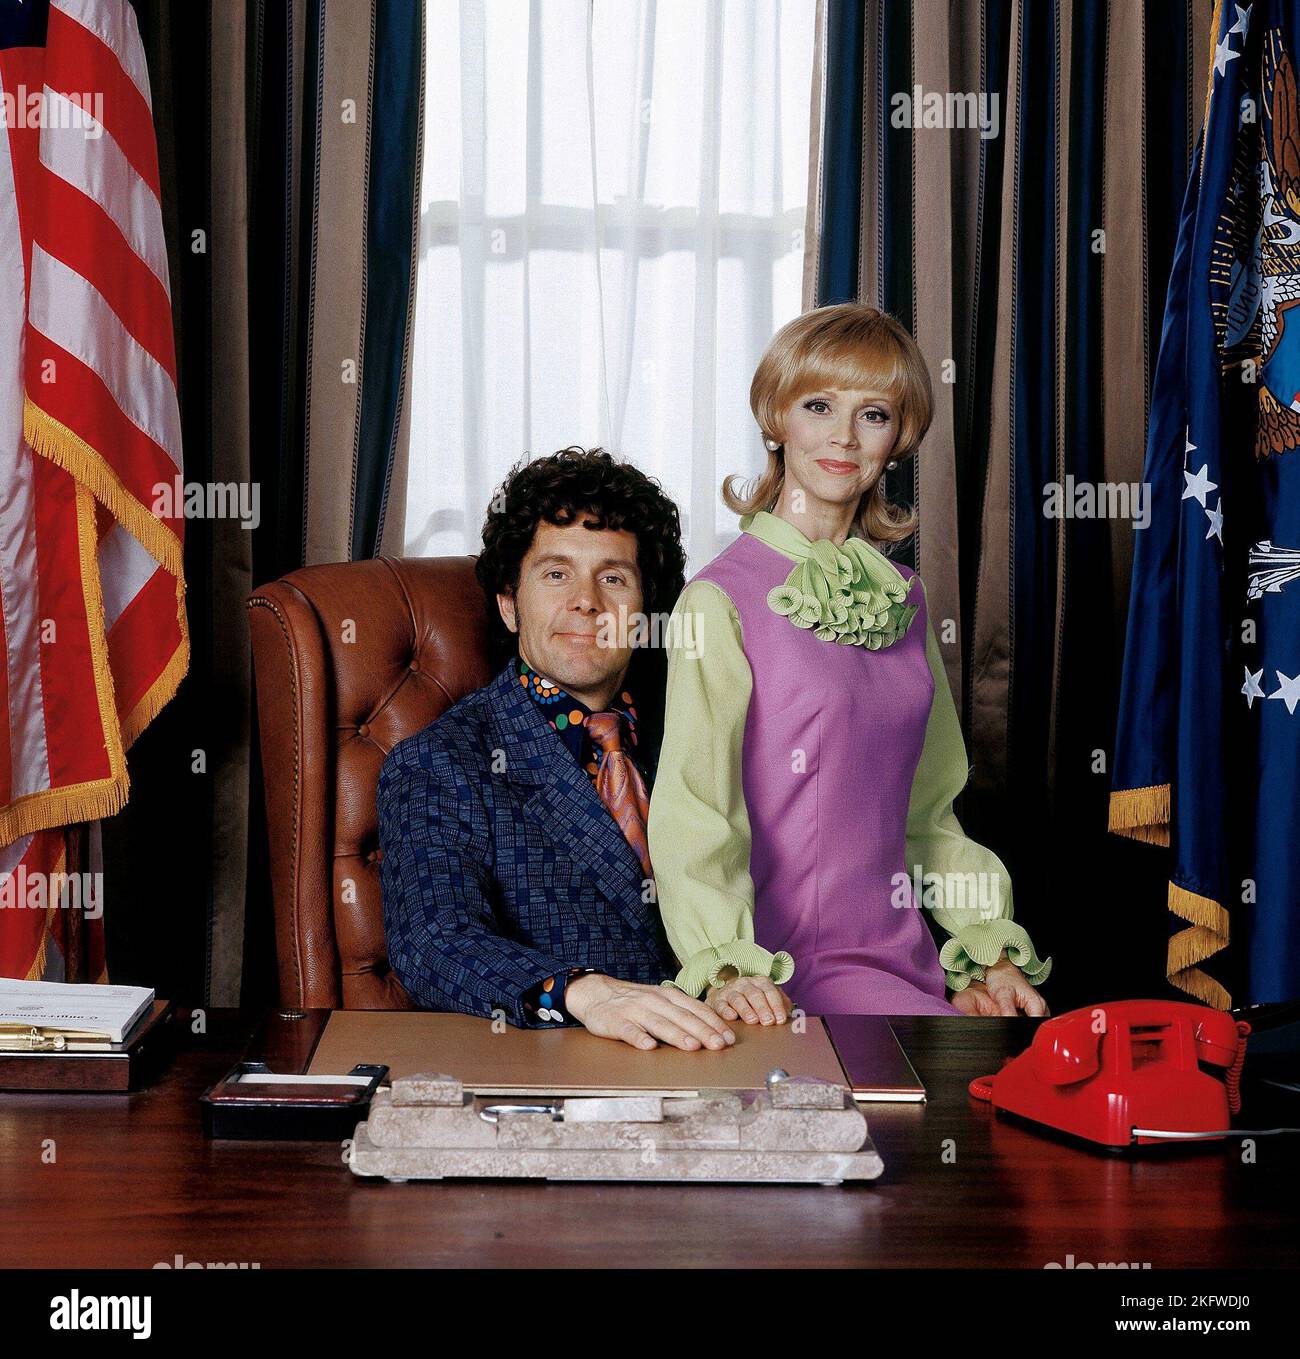 COLE DI GARY, Shelley, lungo la BRADY BUNCH nella Casa Bianca, 2002 Foto Stock